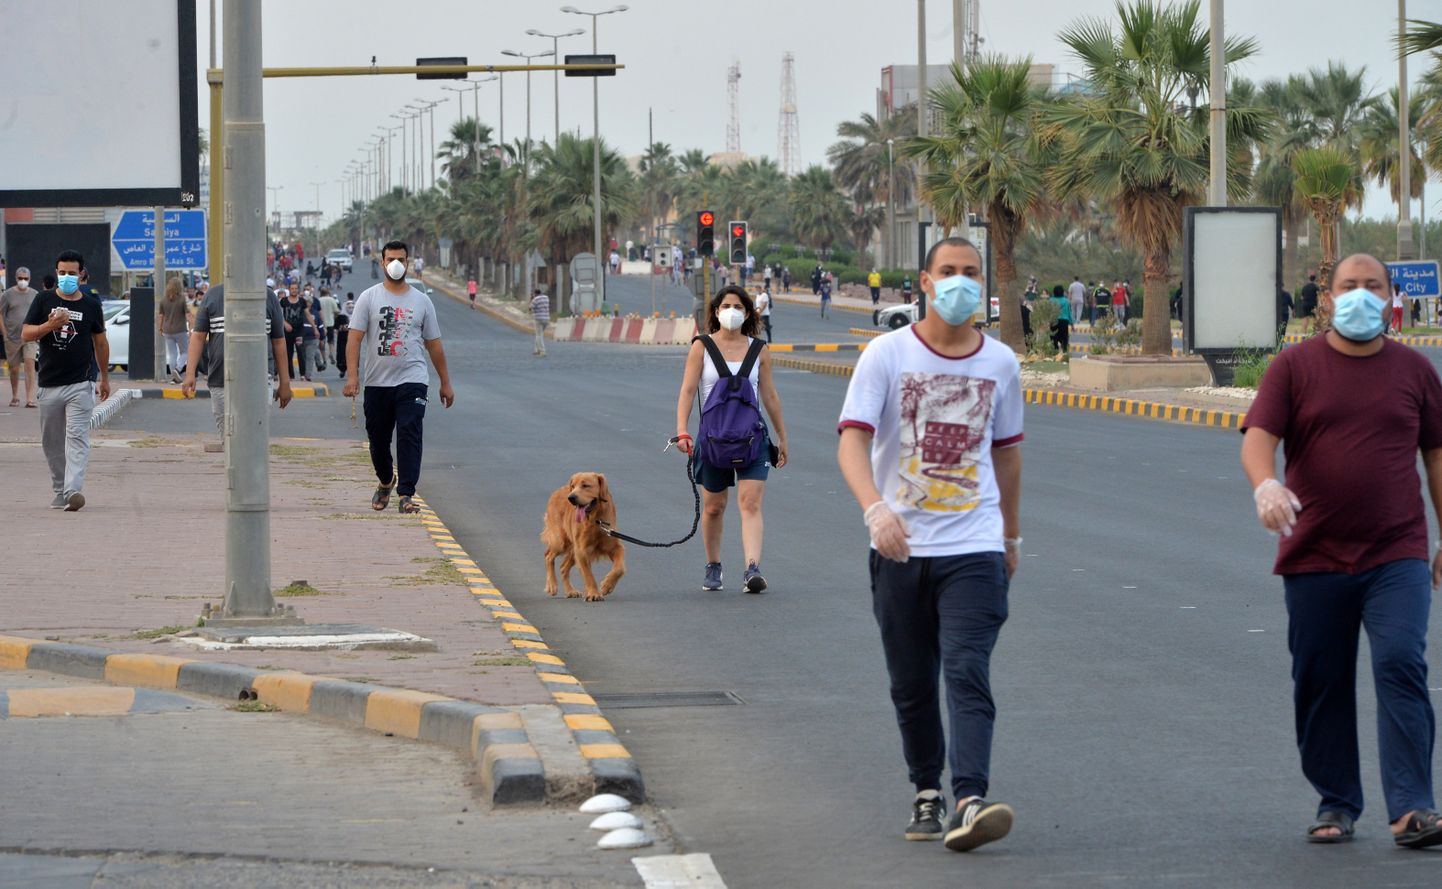 Kuveitlased koroonapiirangute ajal jalutamas.